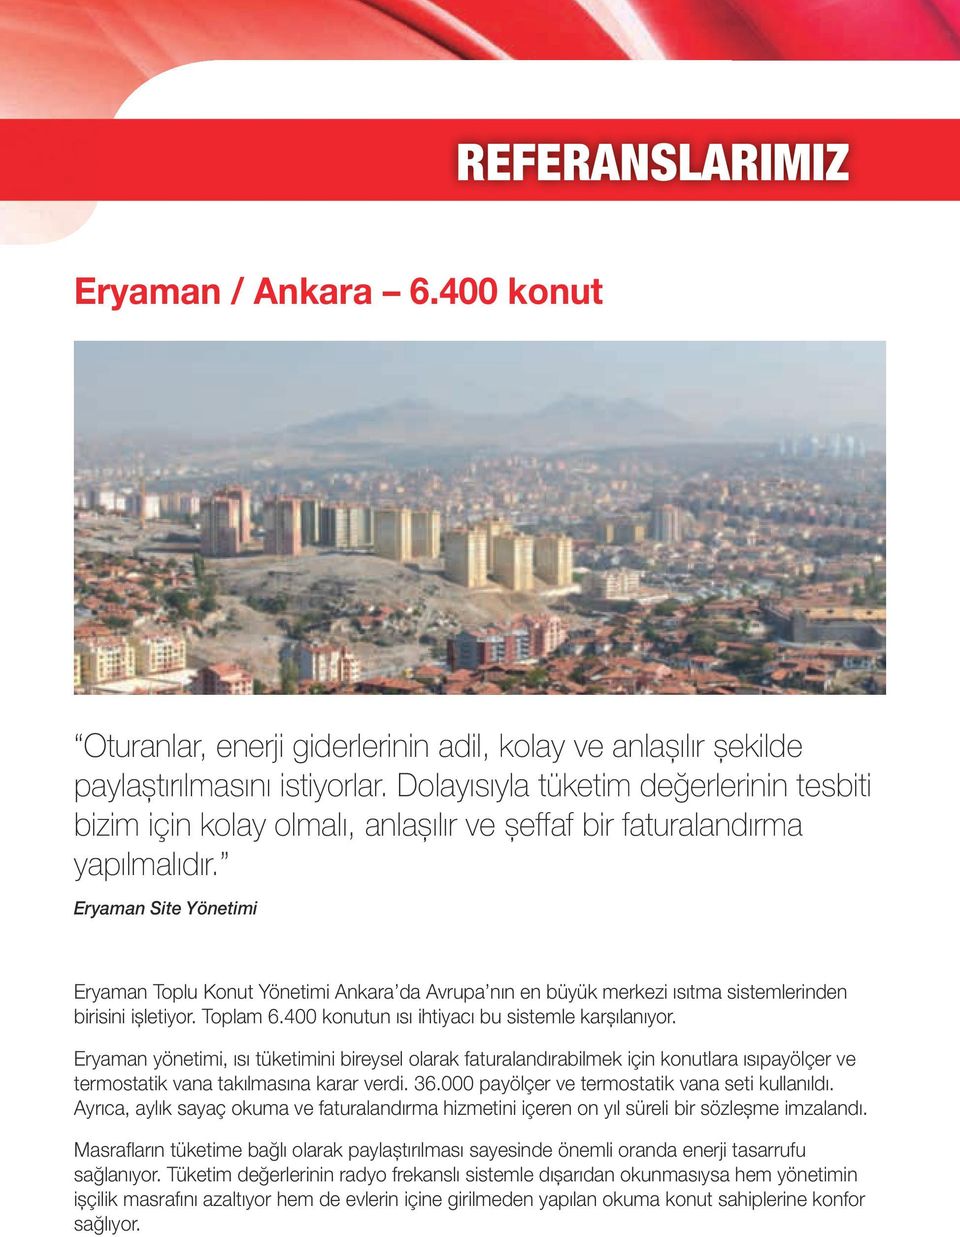 Eryaman Site Yönetimi Eryaman Toplu Konut Yönetimi Ankara da Avrupa nın en büyük merkezi ısıtma sistemlerinden birisini işletiyor. Toplam 6.400 konutun ısı ihtiyacı bu sistemle karşılanıyor.